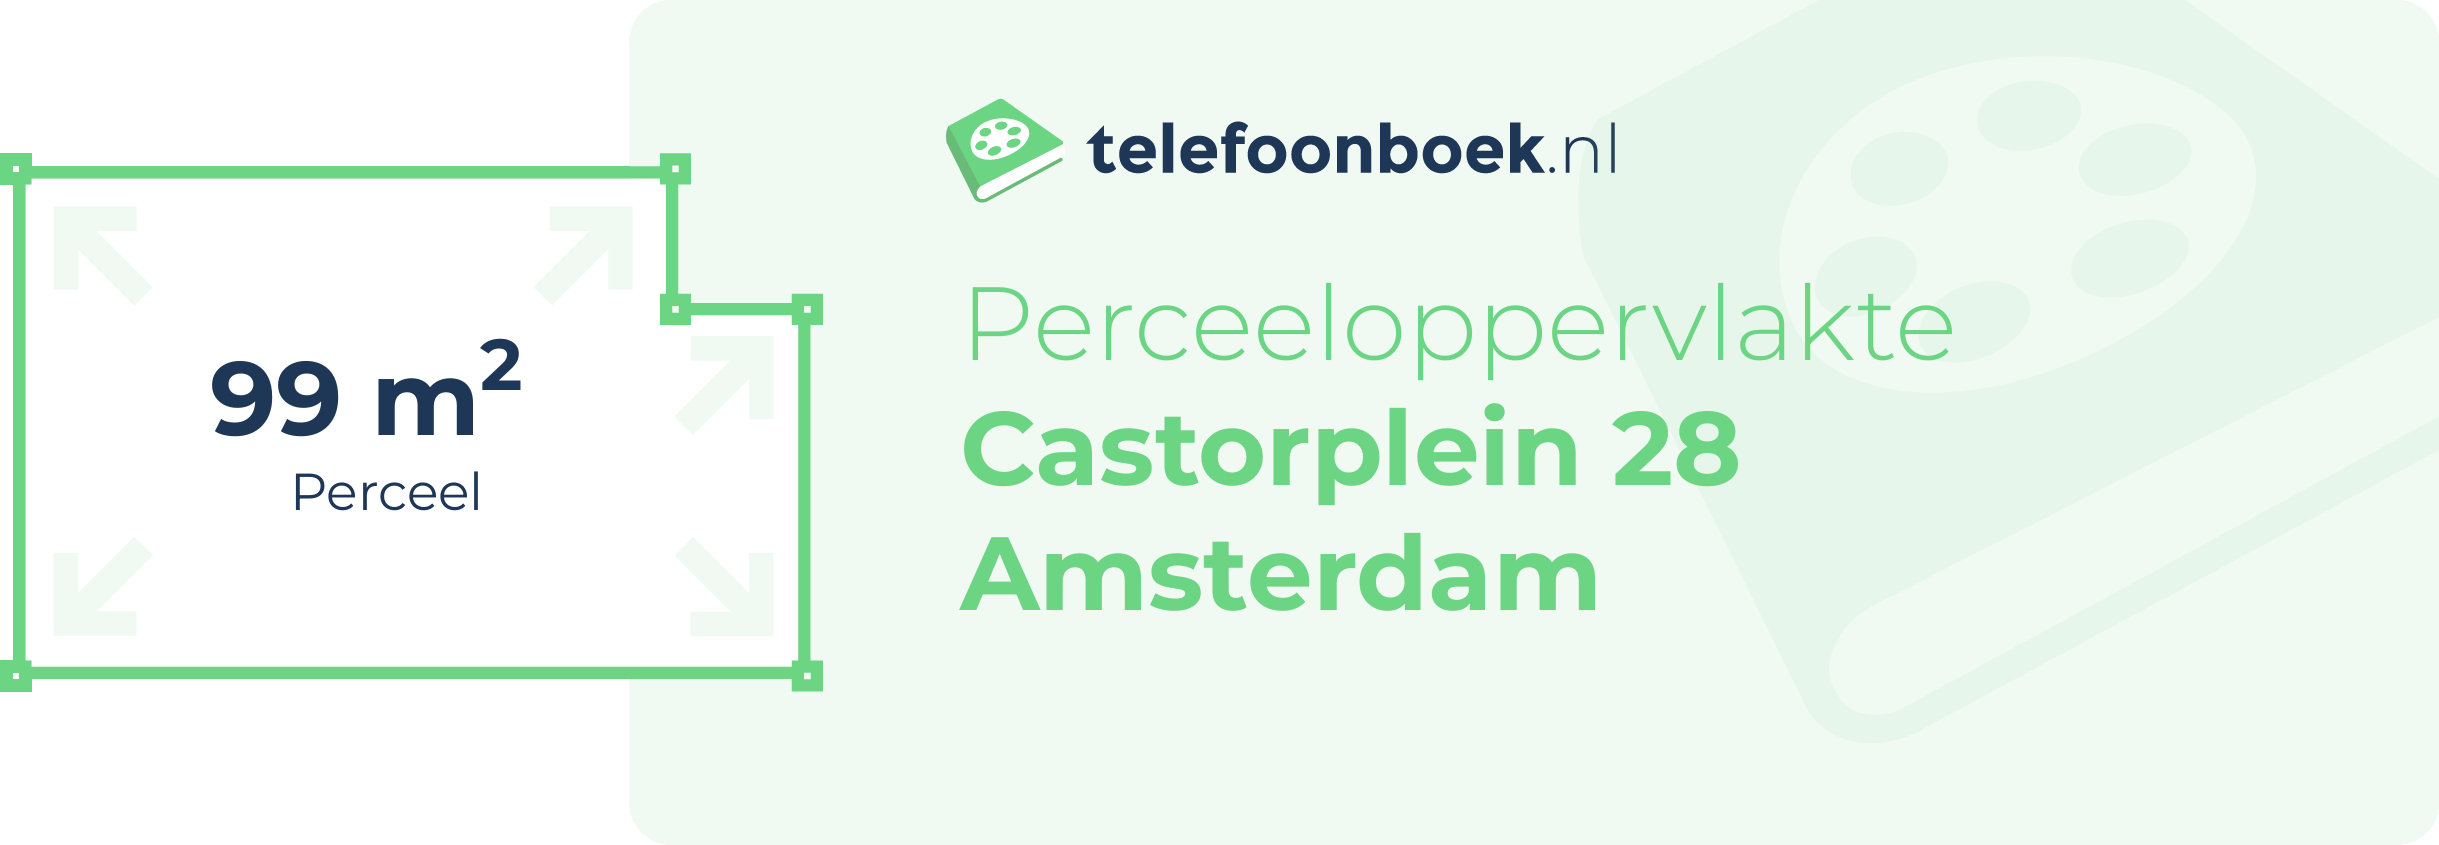 Perceeloppervlakte Castorplein 28 Amsterdam